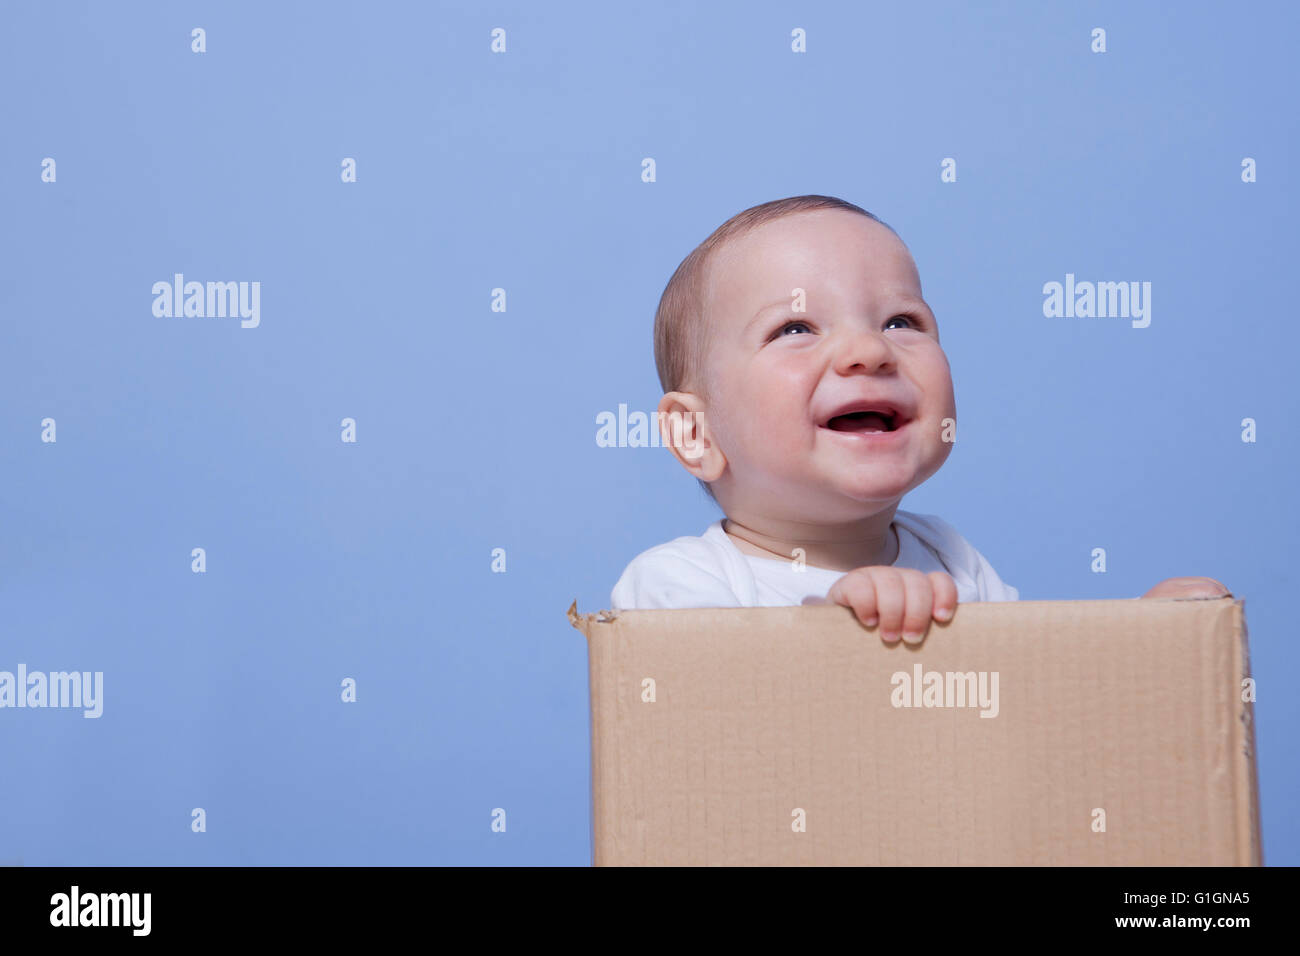 Porträt eines niedlichen Babys spielen in einem braunen Karton Stockfoto